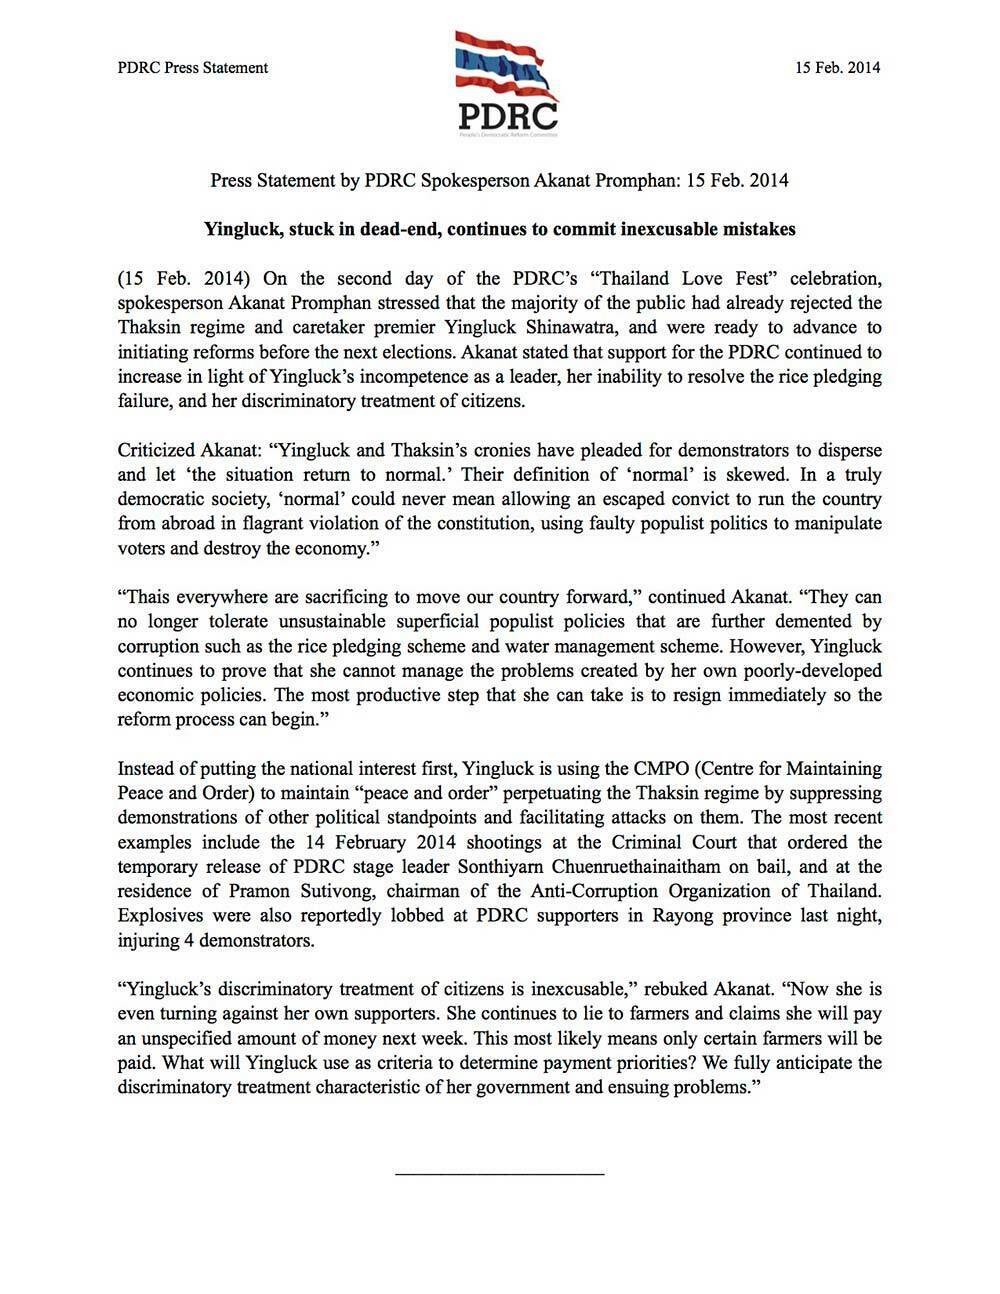 pdrc-press-statement akanat 15-feb-2014 final